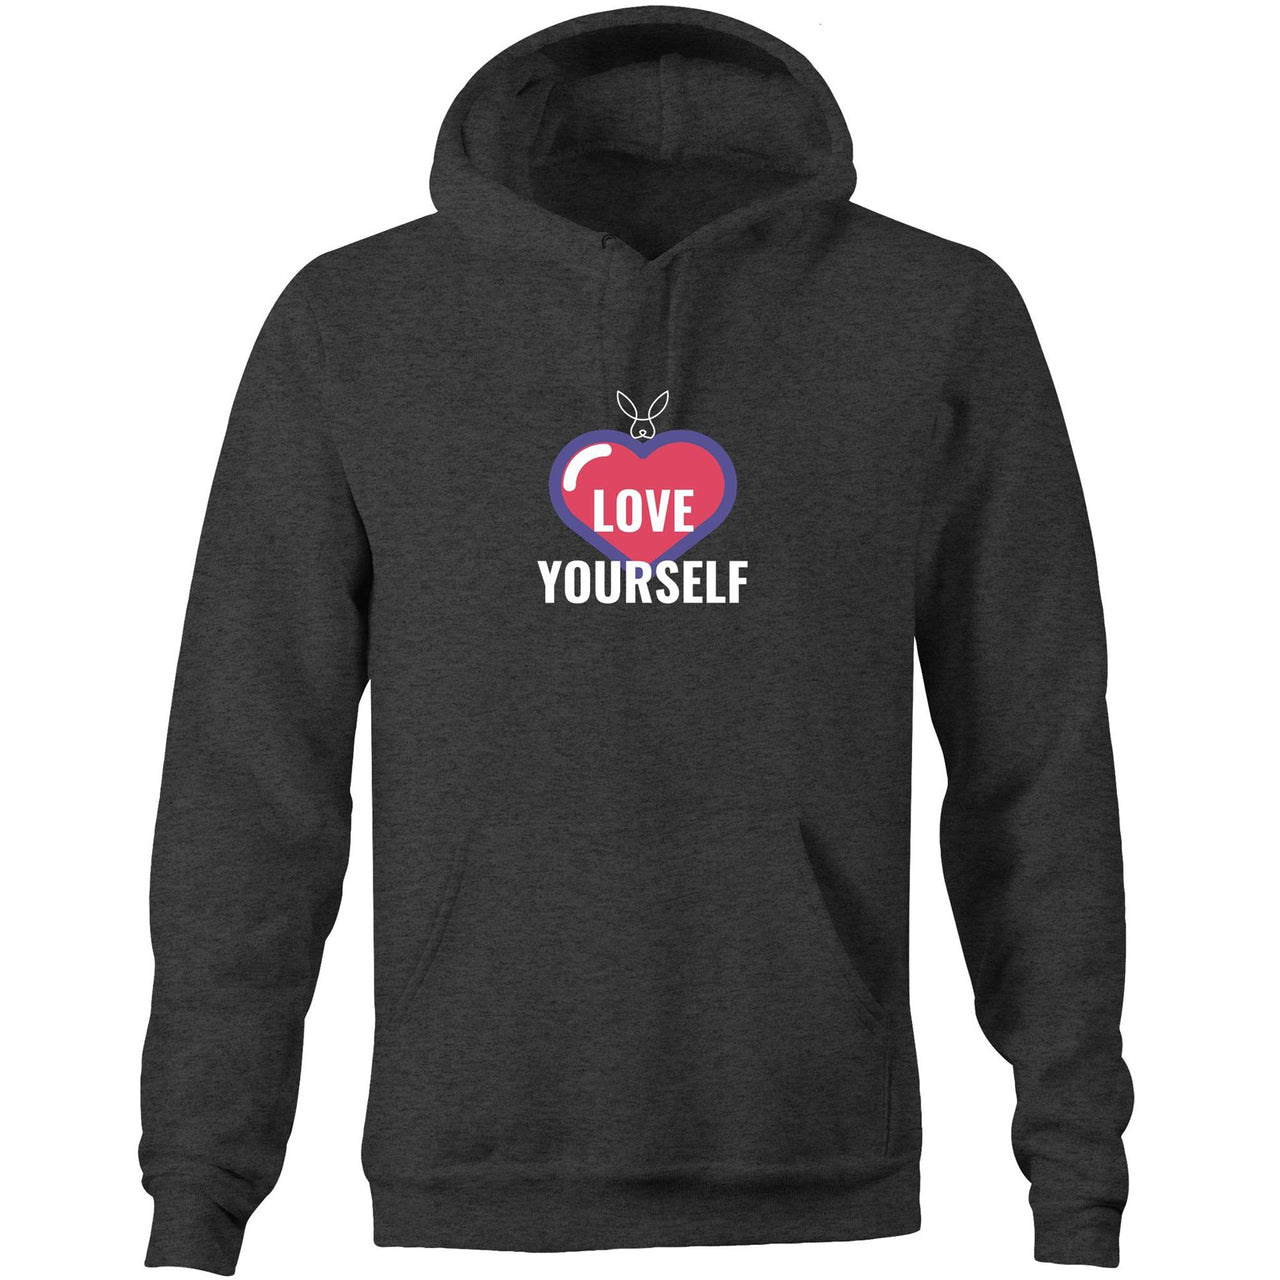 Love Yourself Pocket Hoodie Sweatshirt. unisex mens womens marle grey